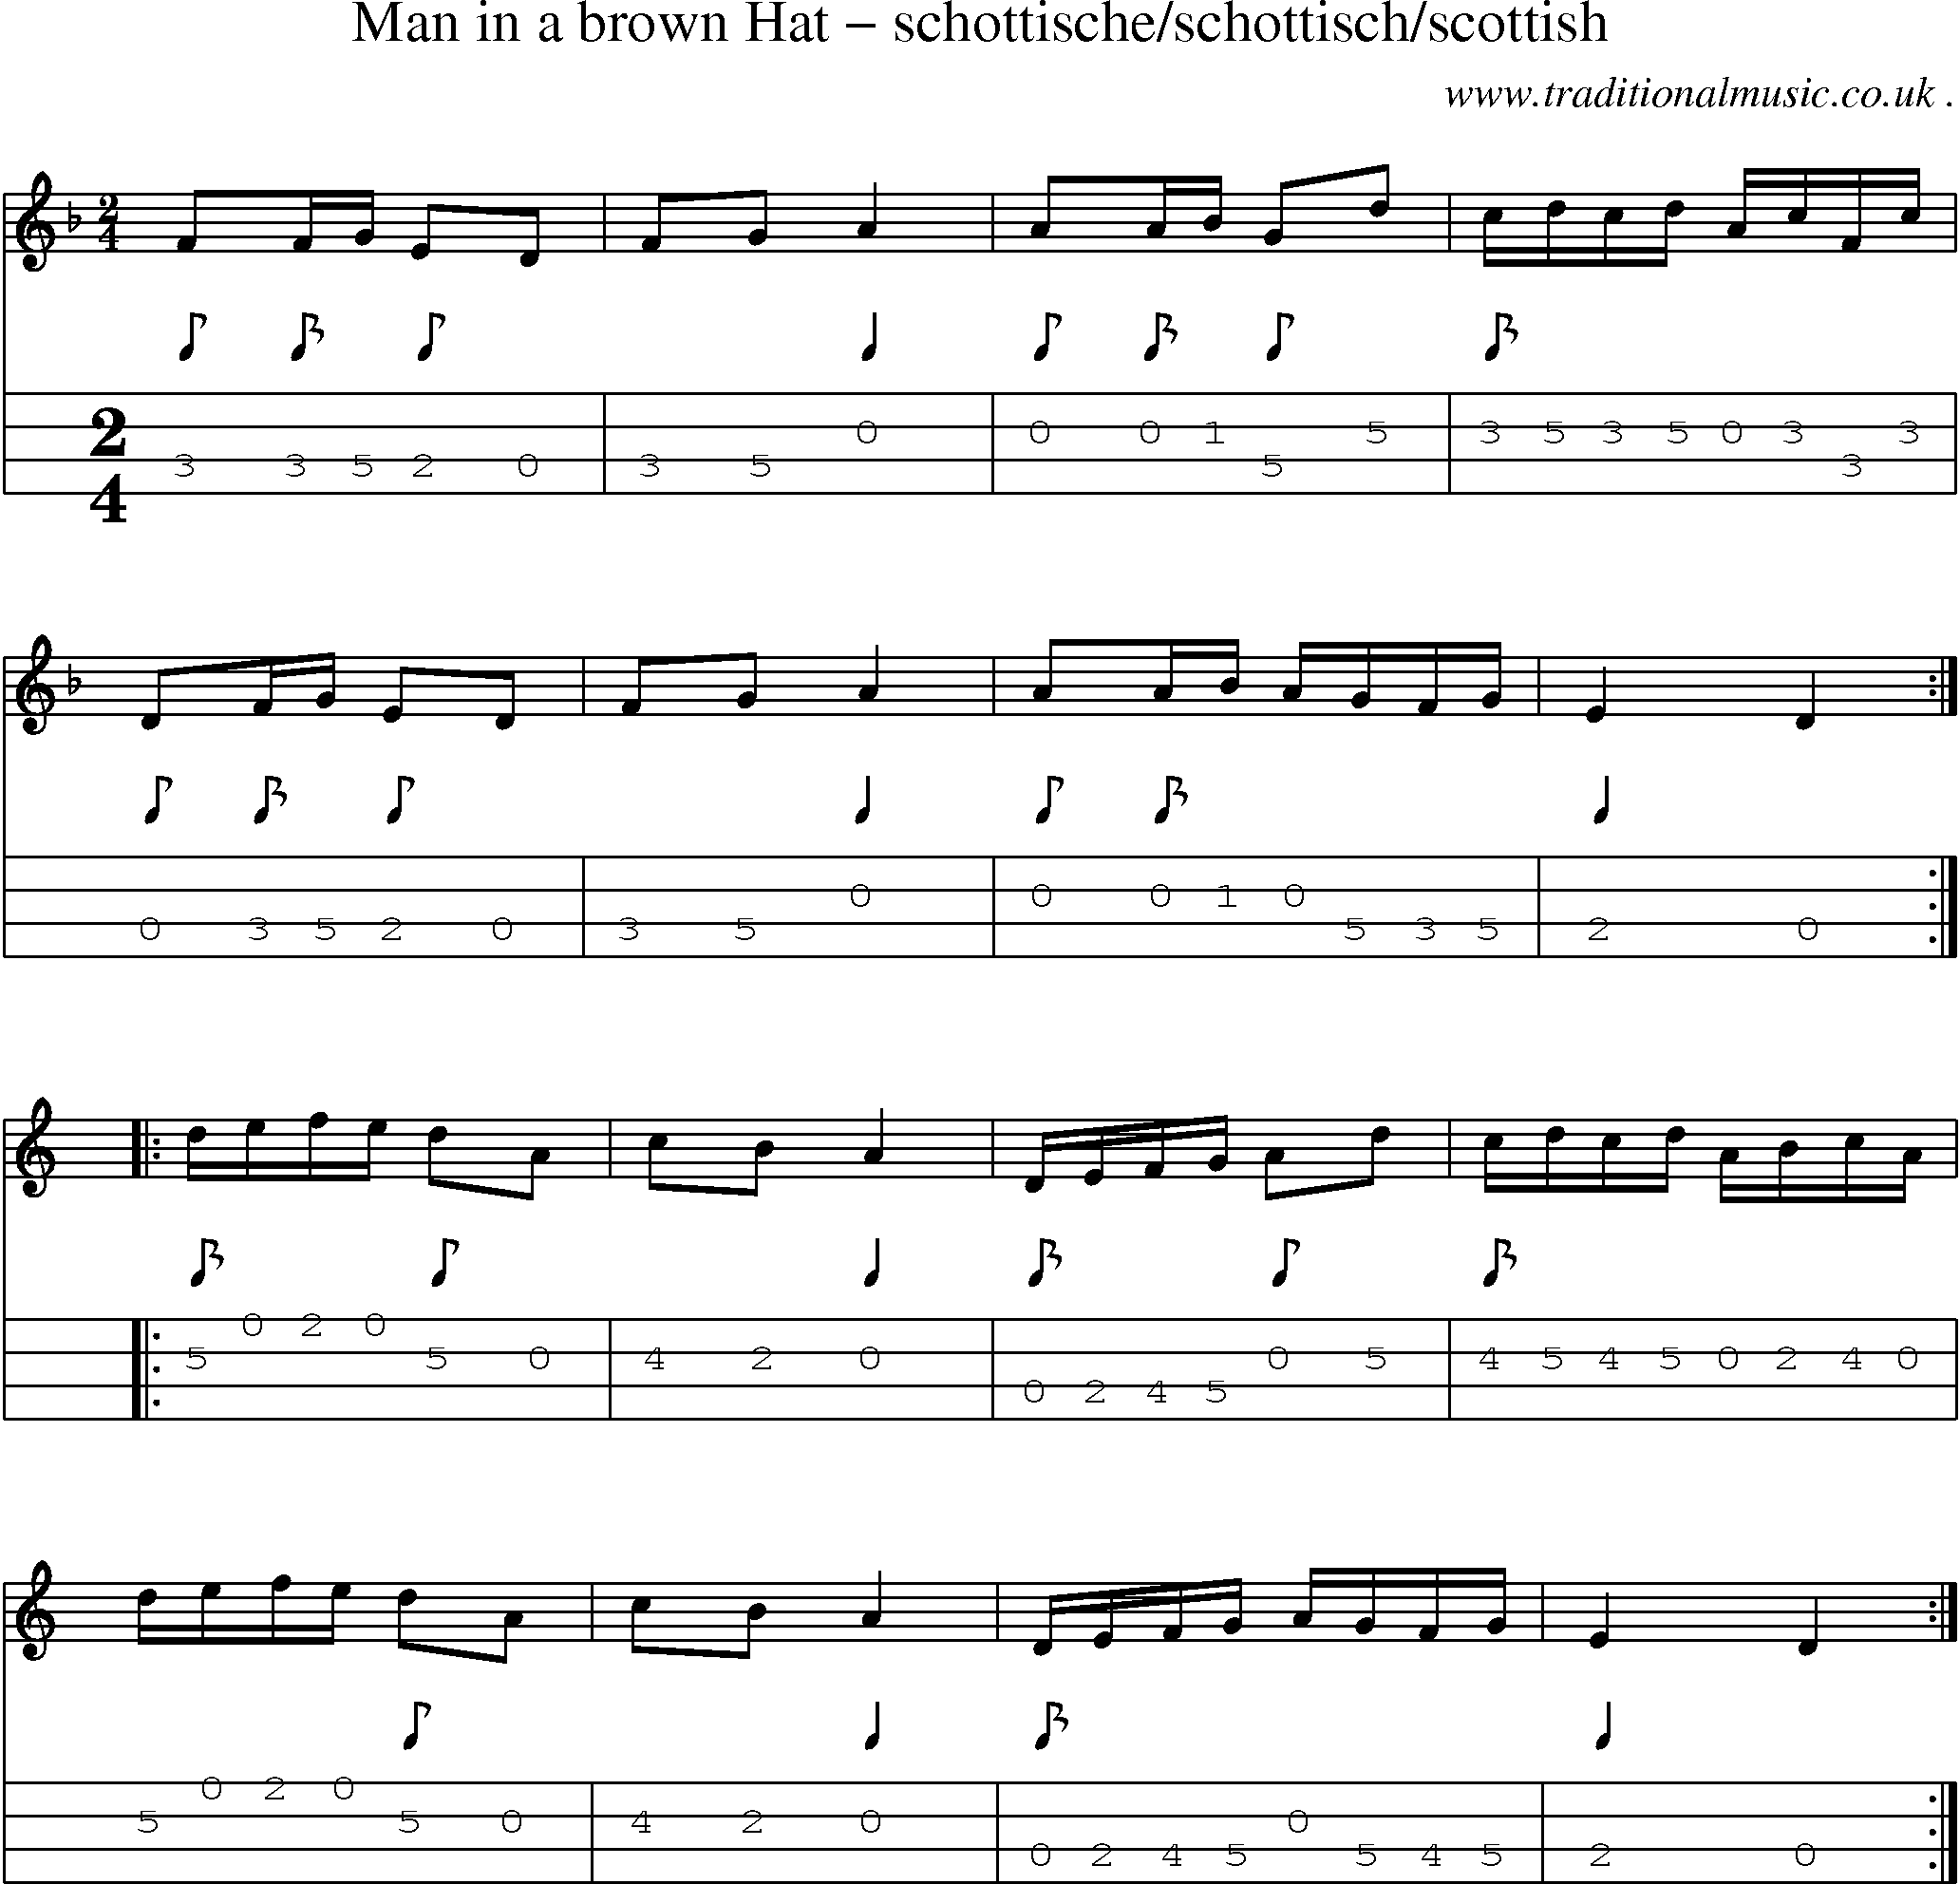 Sheet-Music and Mandolin Tabs for Man In A Brown Hat Schottischeschottischscottish